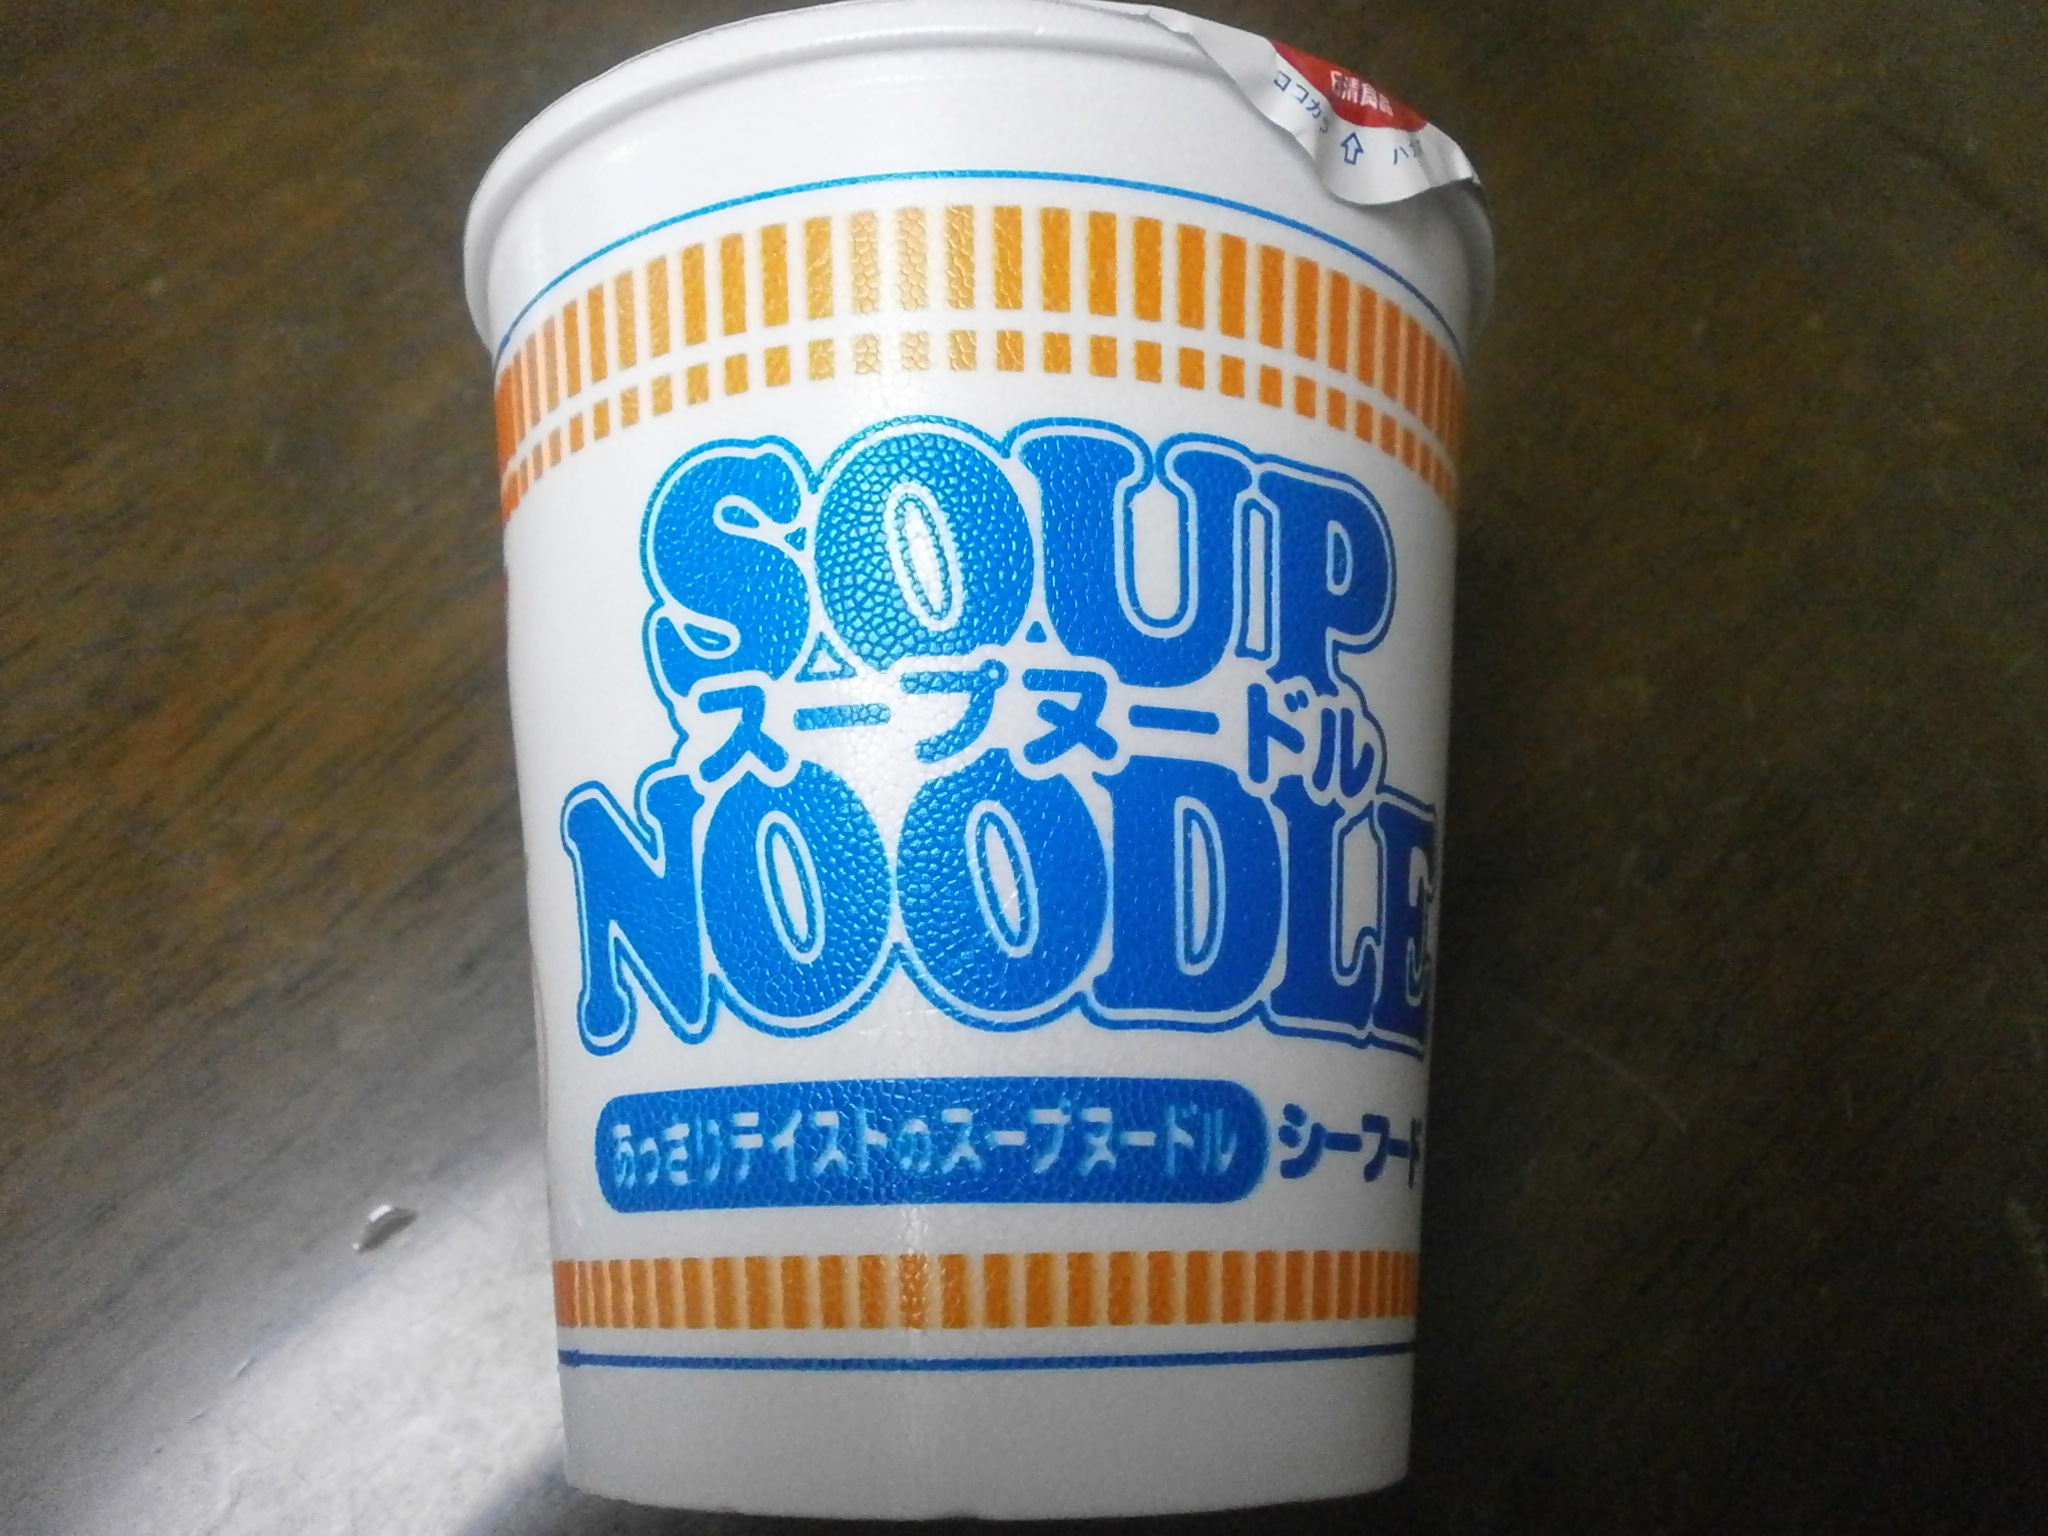 Che ad alto contenuto calorico? Noodle Soup (Curry)? Noodle soup (frutti di mare)?